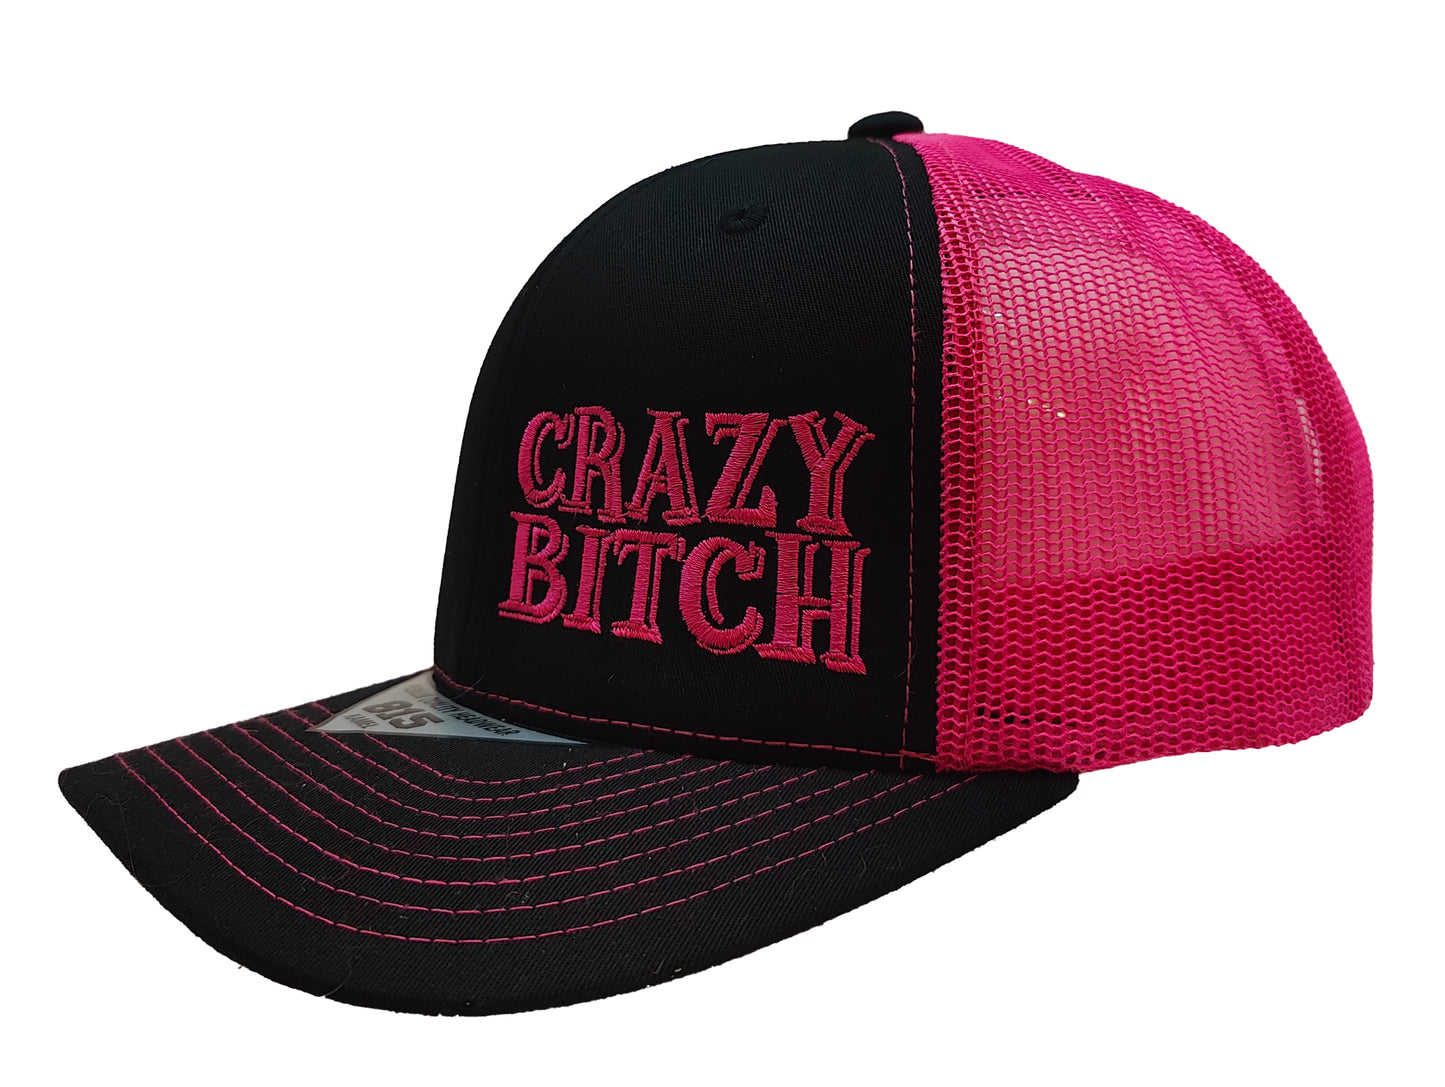 CRAZY BITCH Kamel Adult Hat 815 Black / Pink